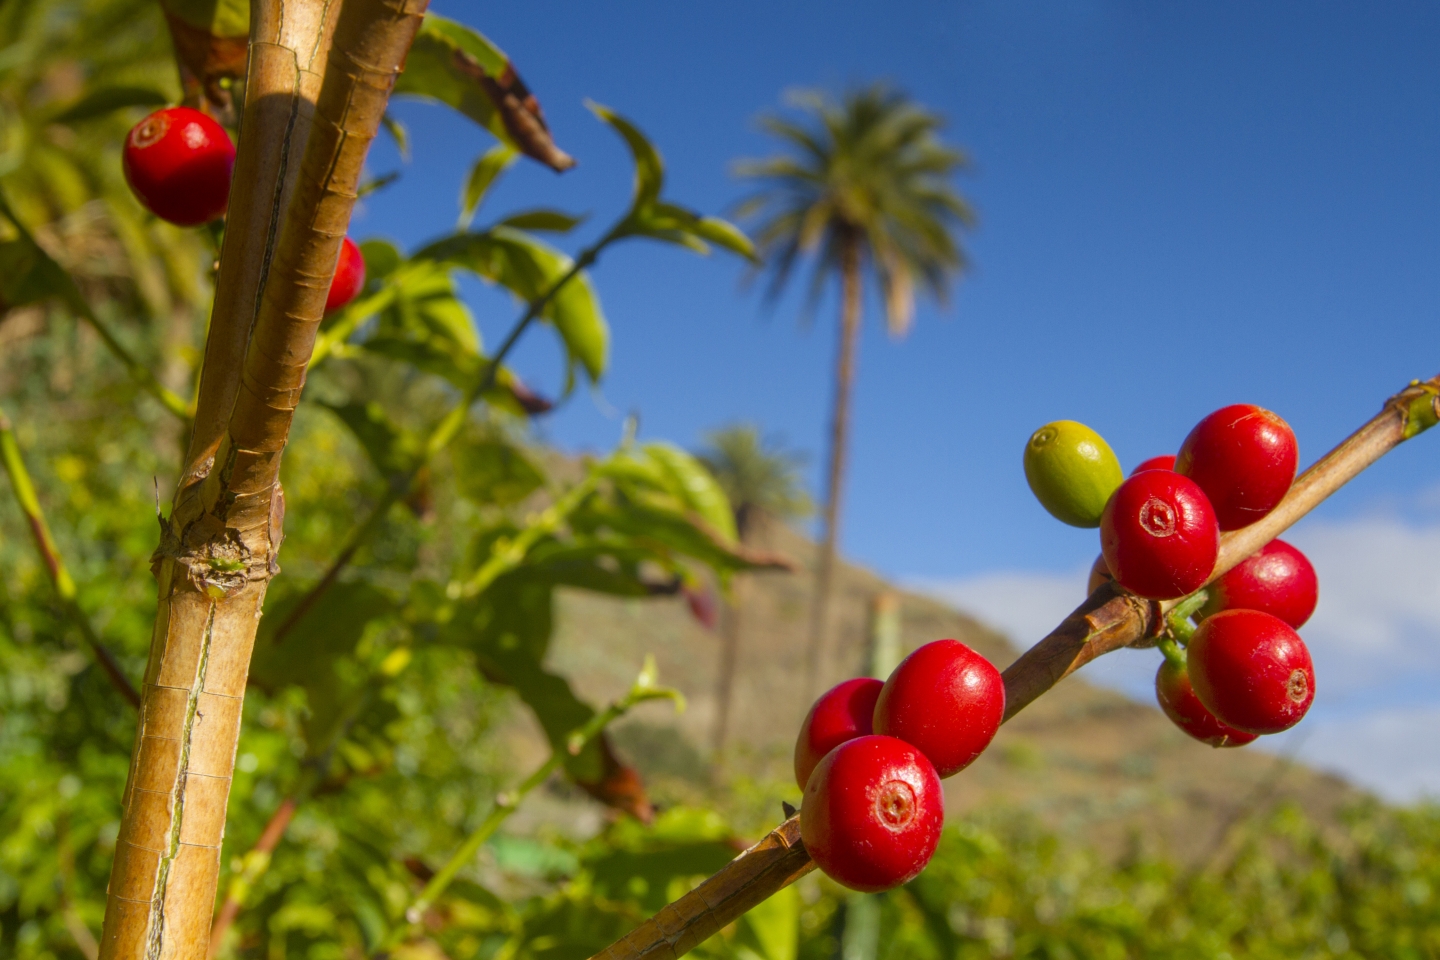 Coffee growing in Gran Canaria